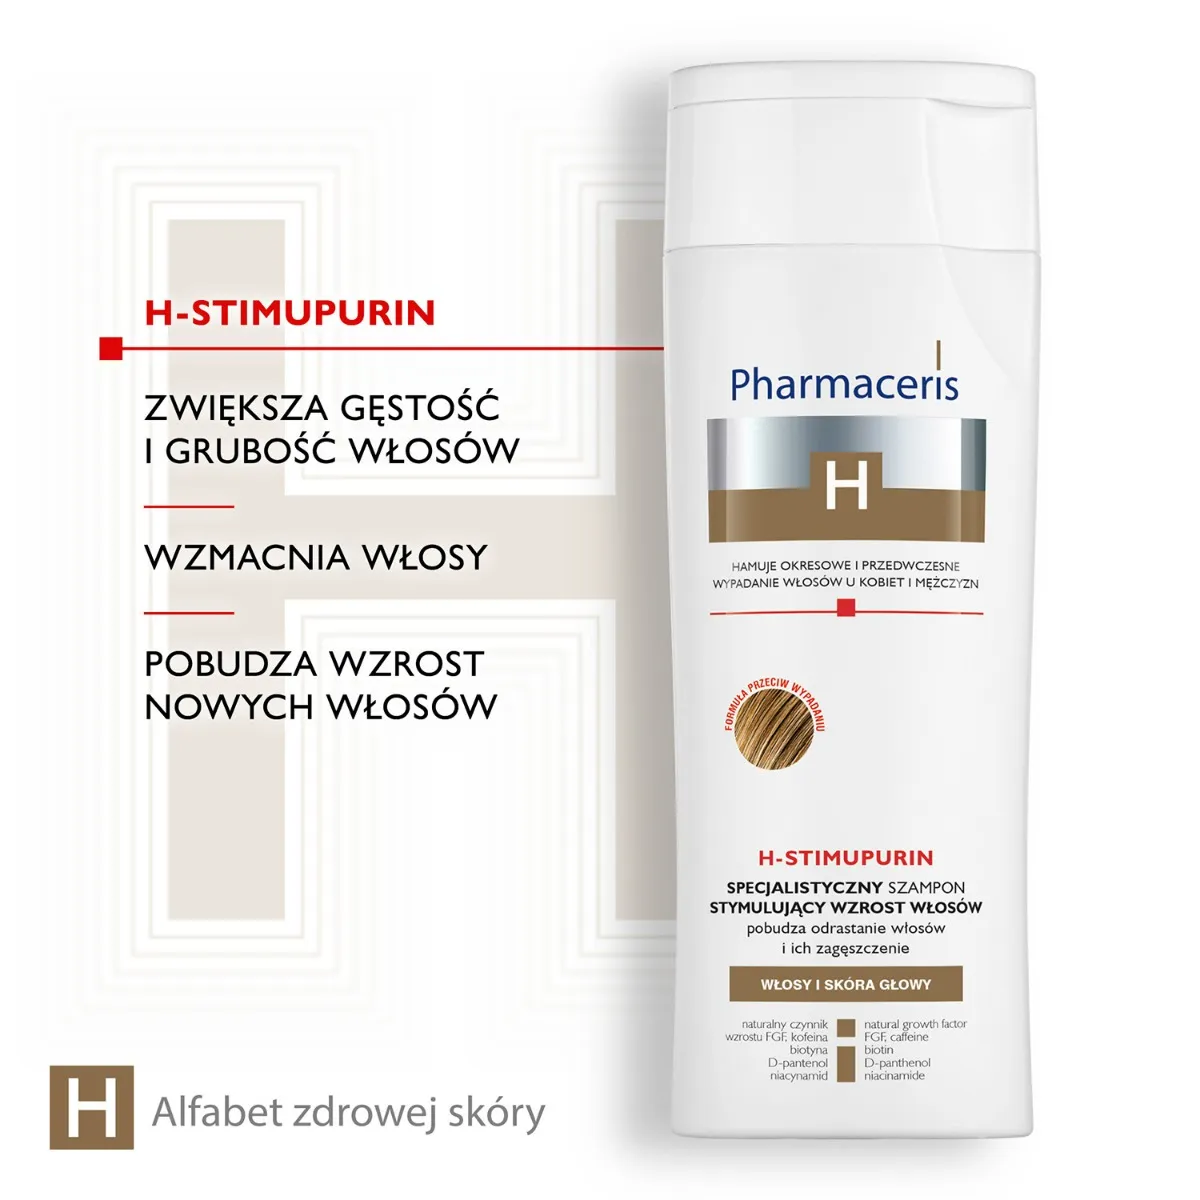 Pharmaceris H, H-Stimupurin, specjalistyczny szampon stymulujący wzrost włosów, 250 ml 